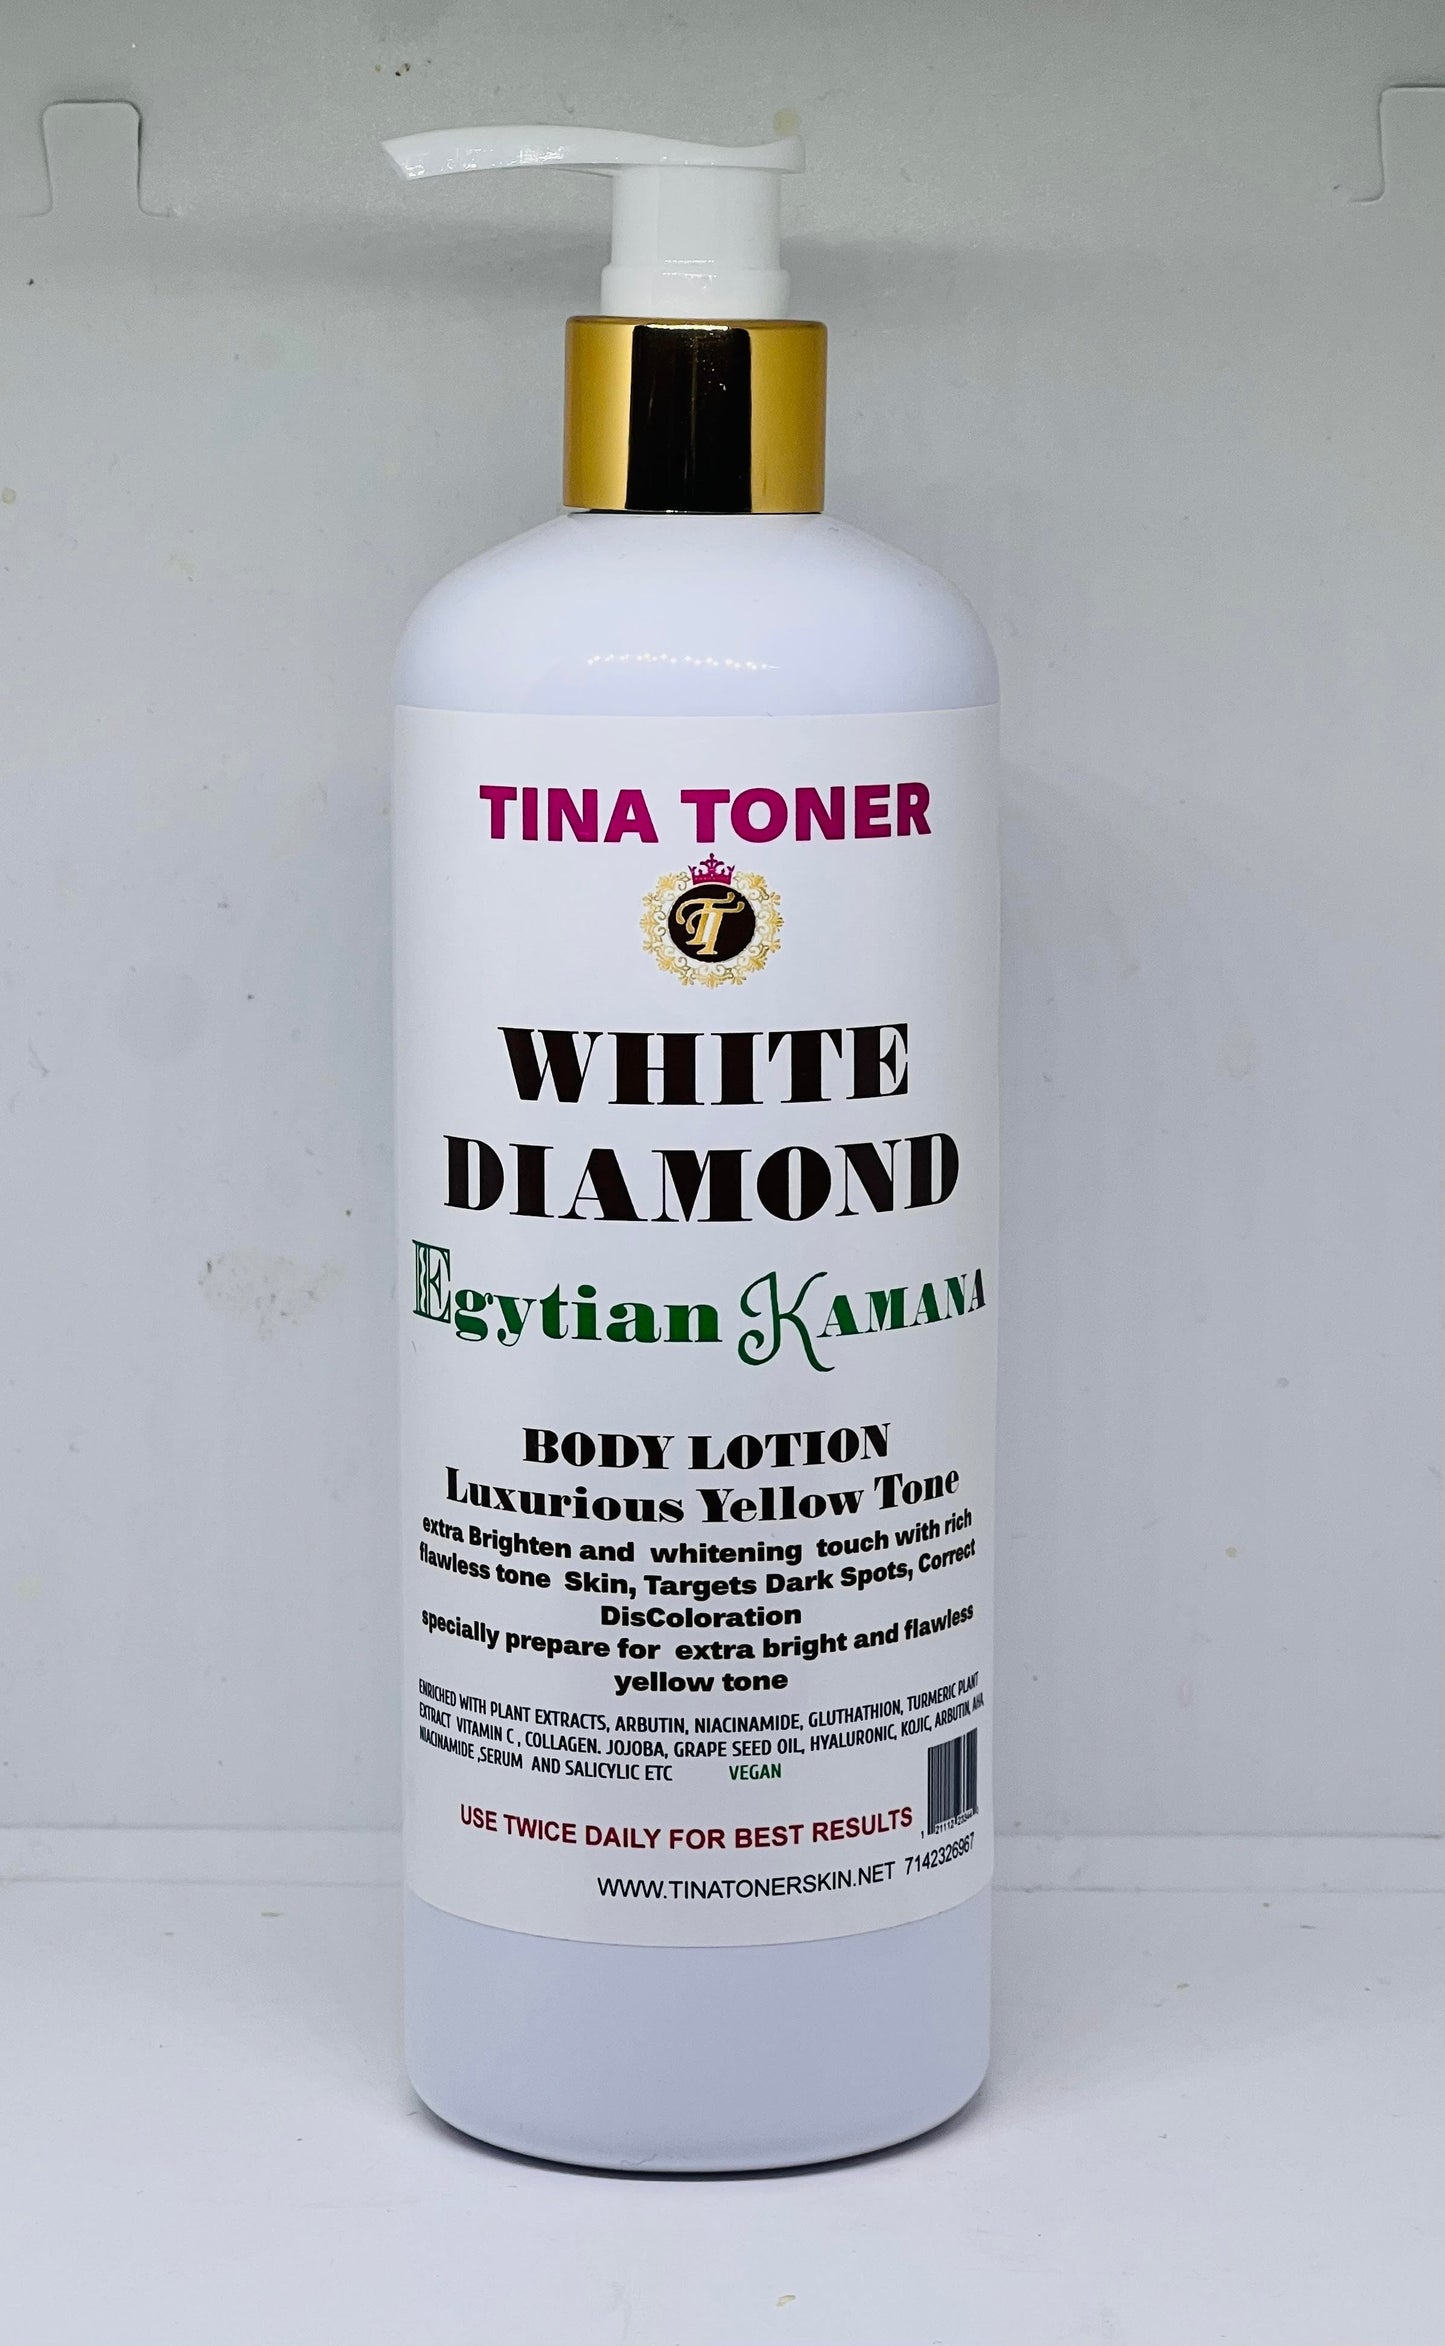 WHITE DIAMOND Body lotion